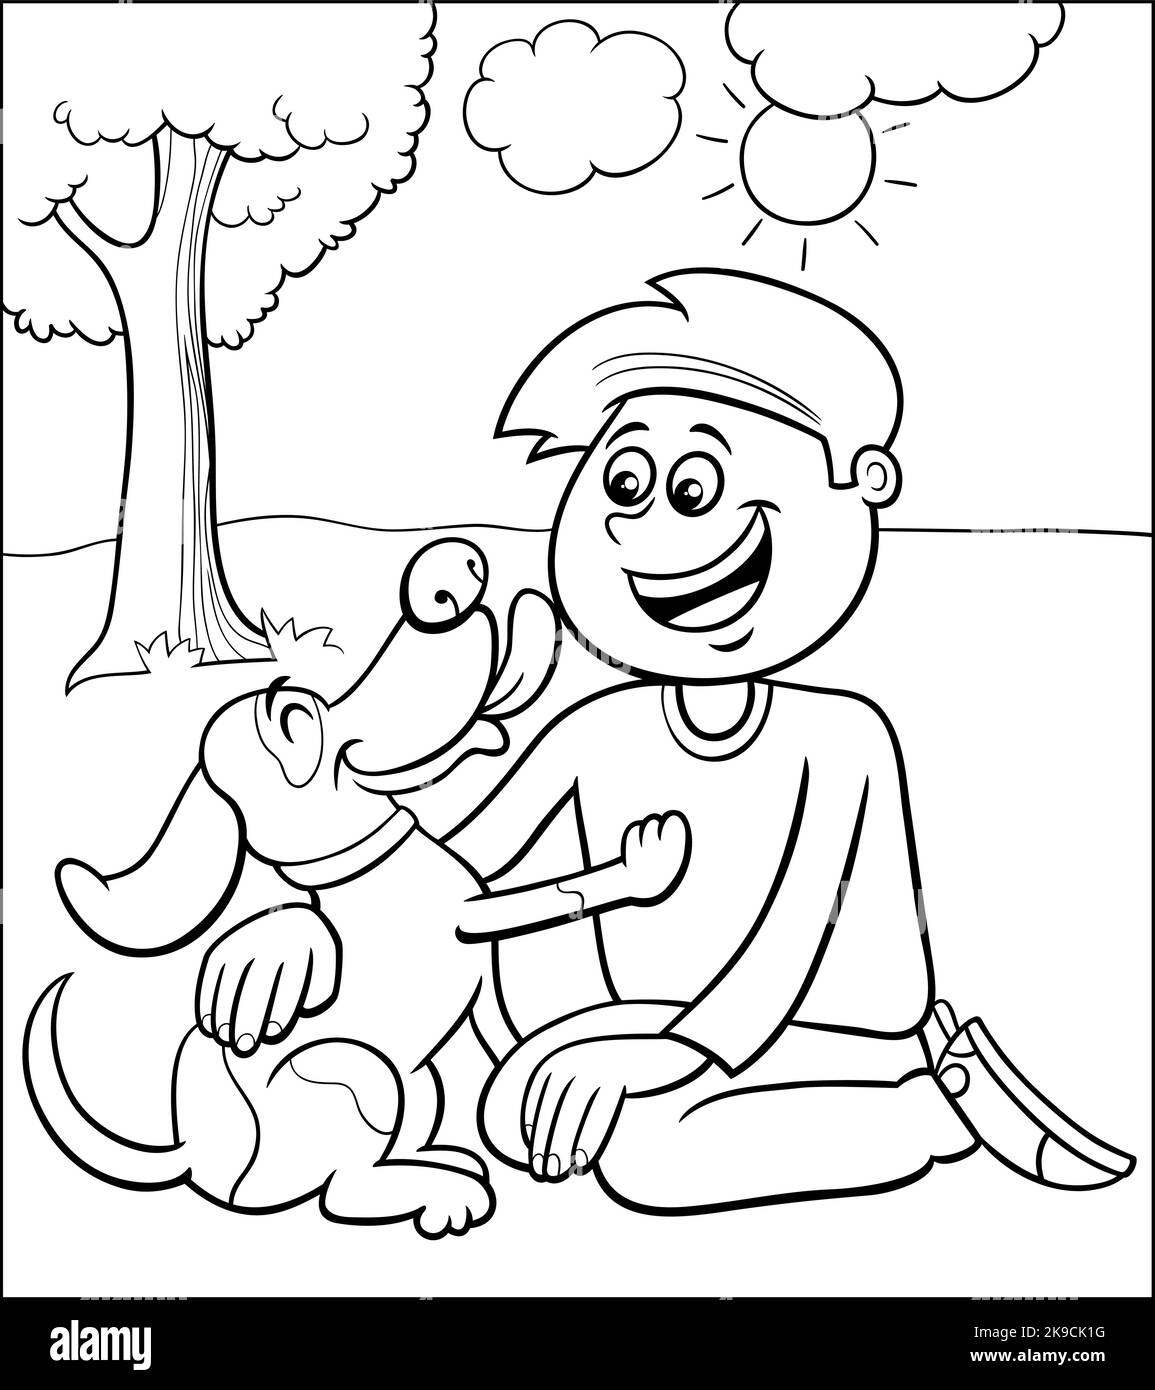 Dessin animé noir et blanc de personnage de garçon avec sa jolie page de coloriage de chien Illustration de Vecteur